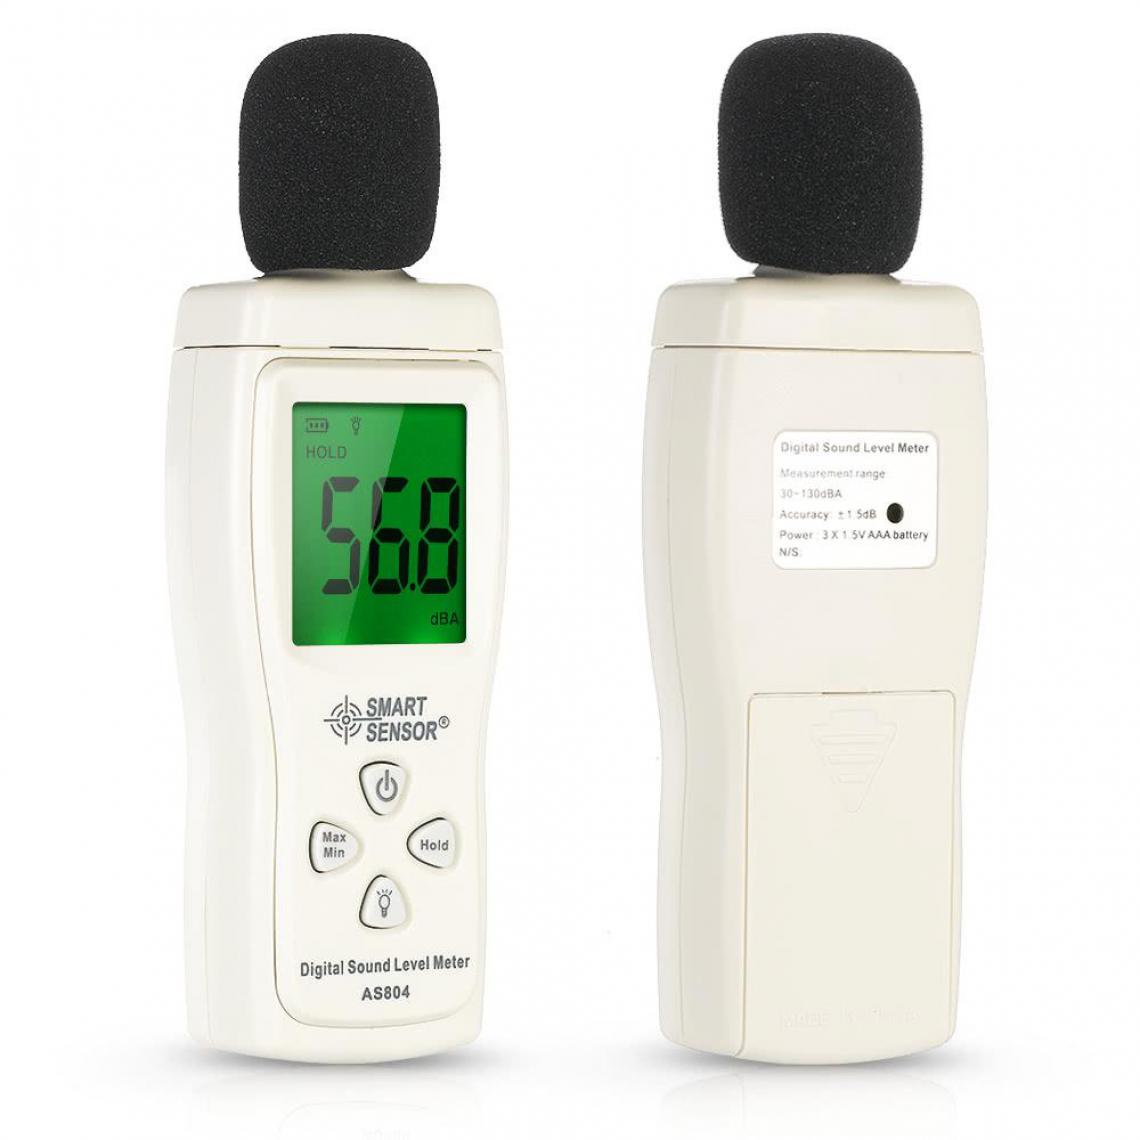 Justgreenbox - Mini compteur de niveau sonore numérique écran LCD Instrument de mesure du bruit testeur de décibels 30-130dBA - 1005001520345883 - Appareils de mesure